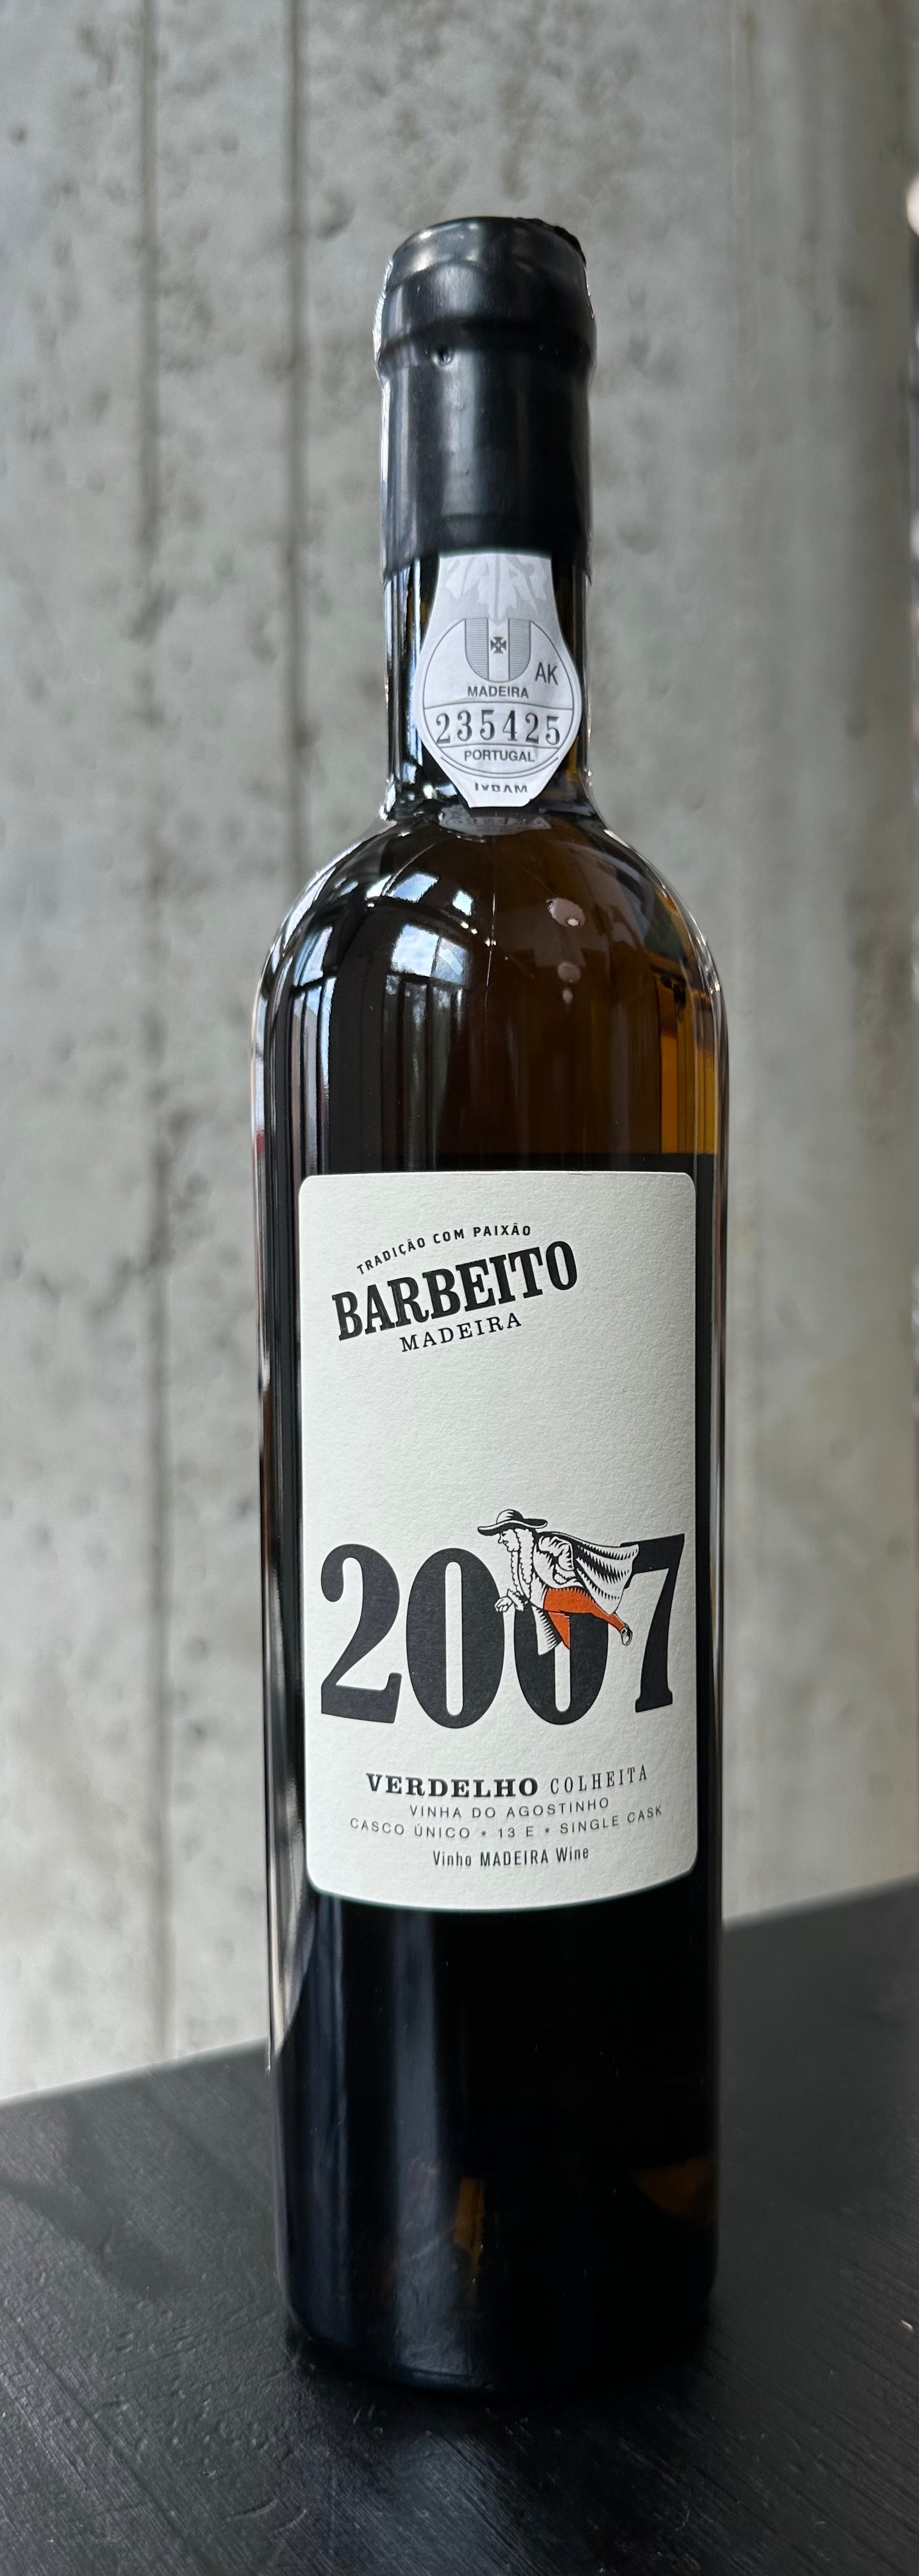 Barbeito Madeira "Vinha do Agostinho - Single Cask 13E" Verdelho '07 (500ml)